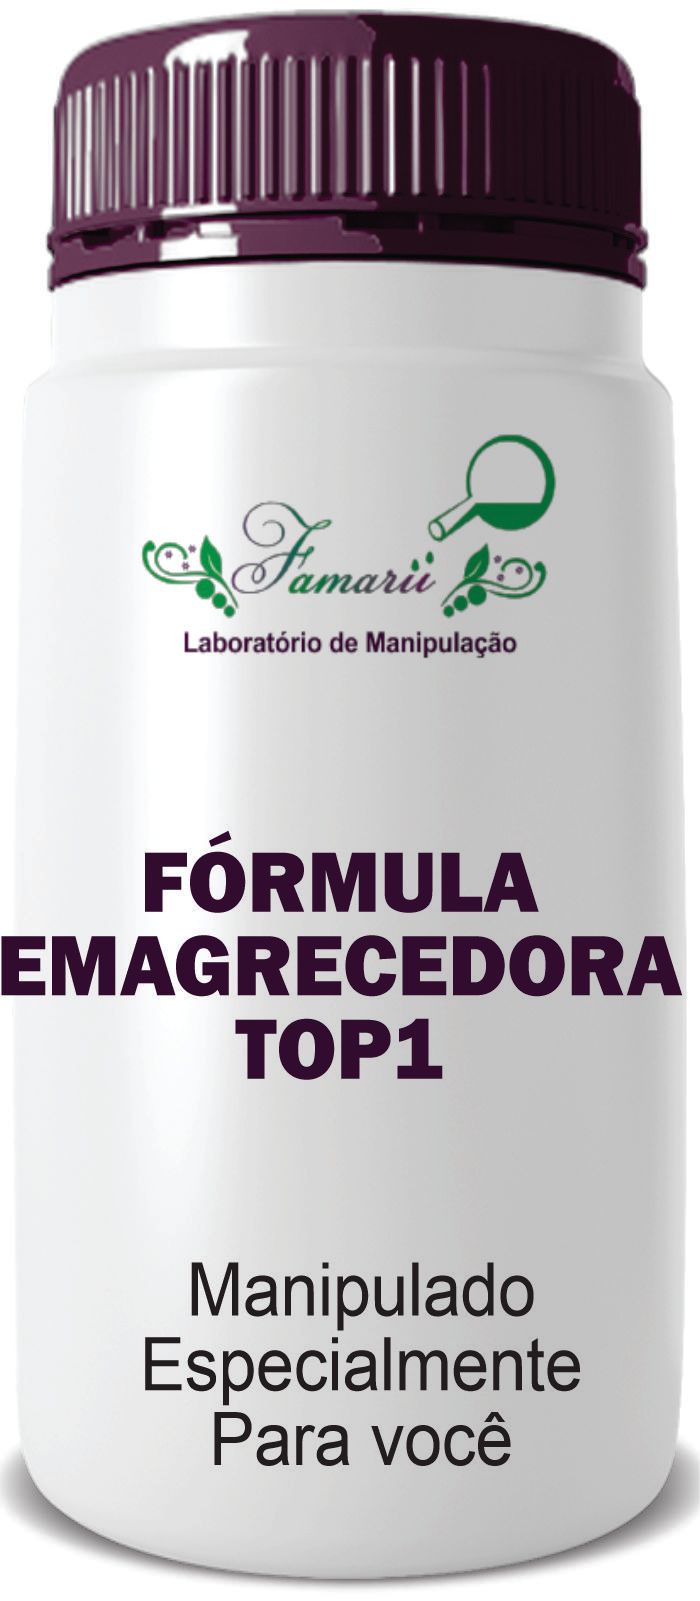 Imagem do Fórmula Emagrecedora TOP1